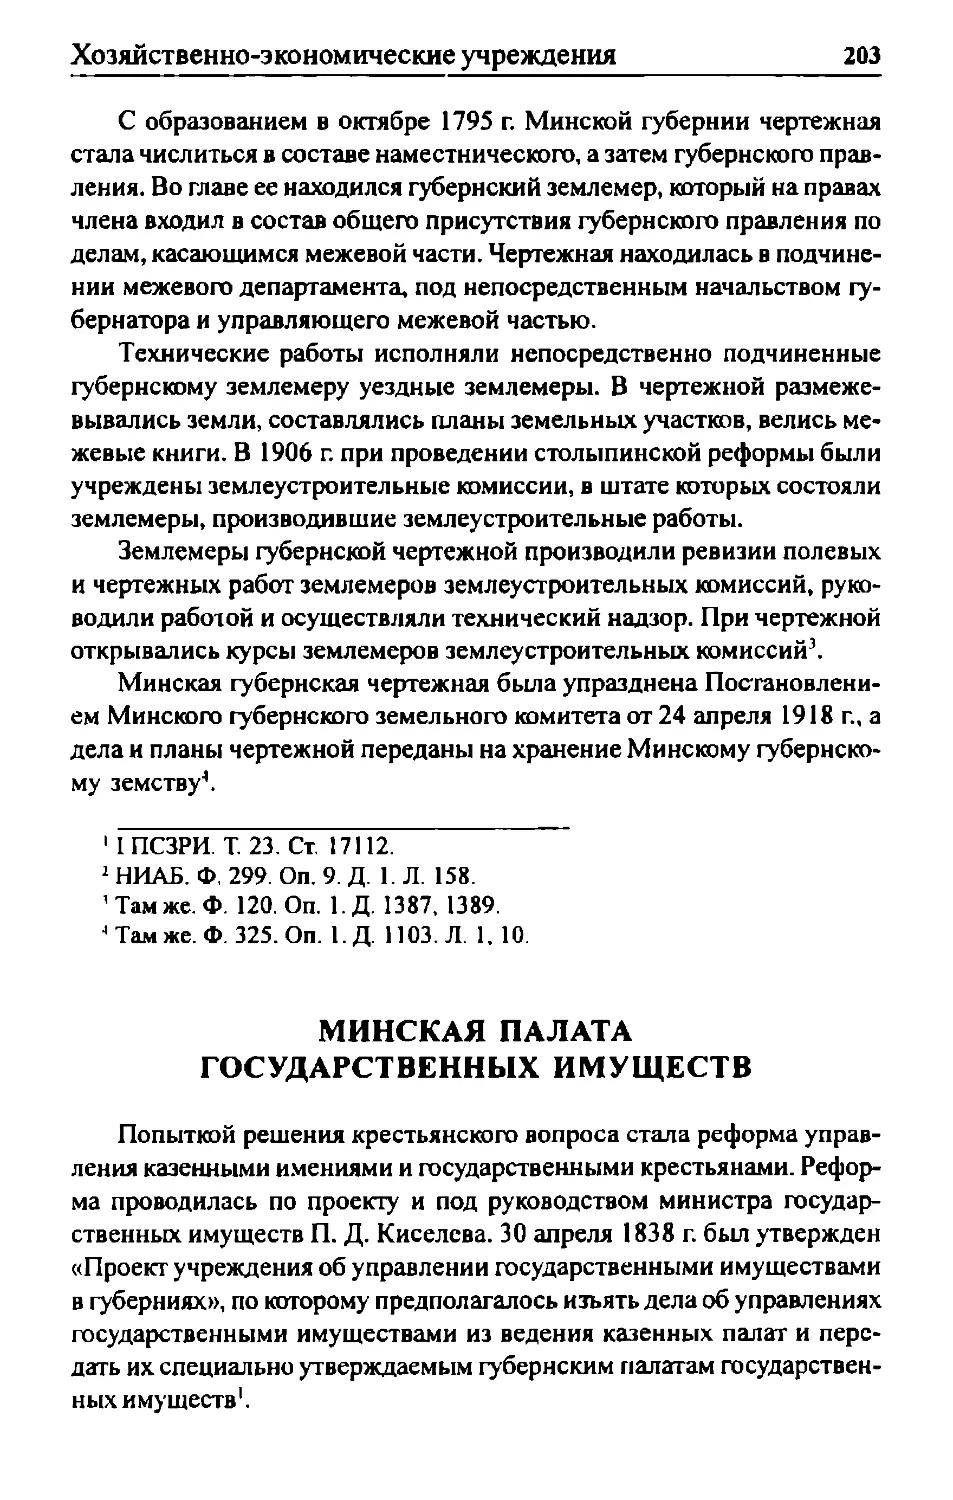 Минская палата государственных имуществ